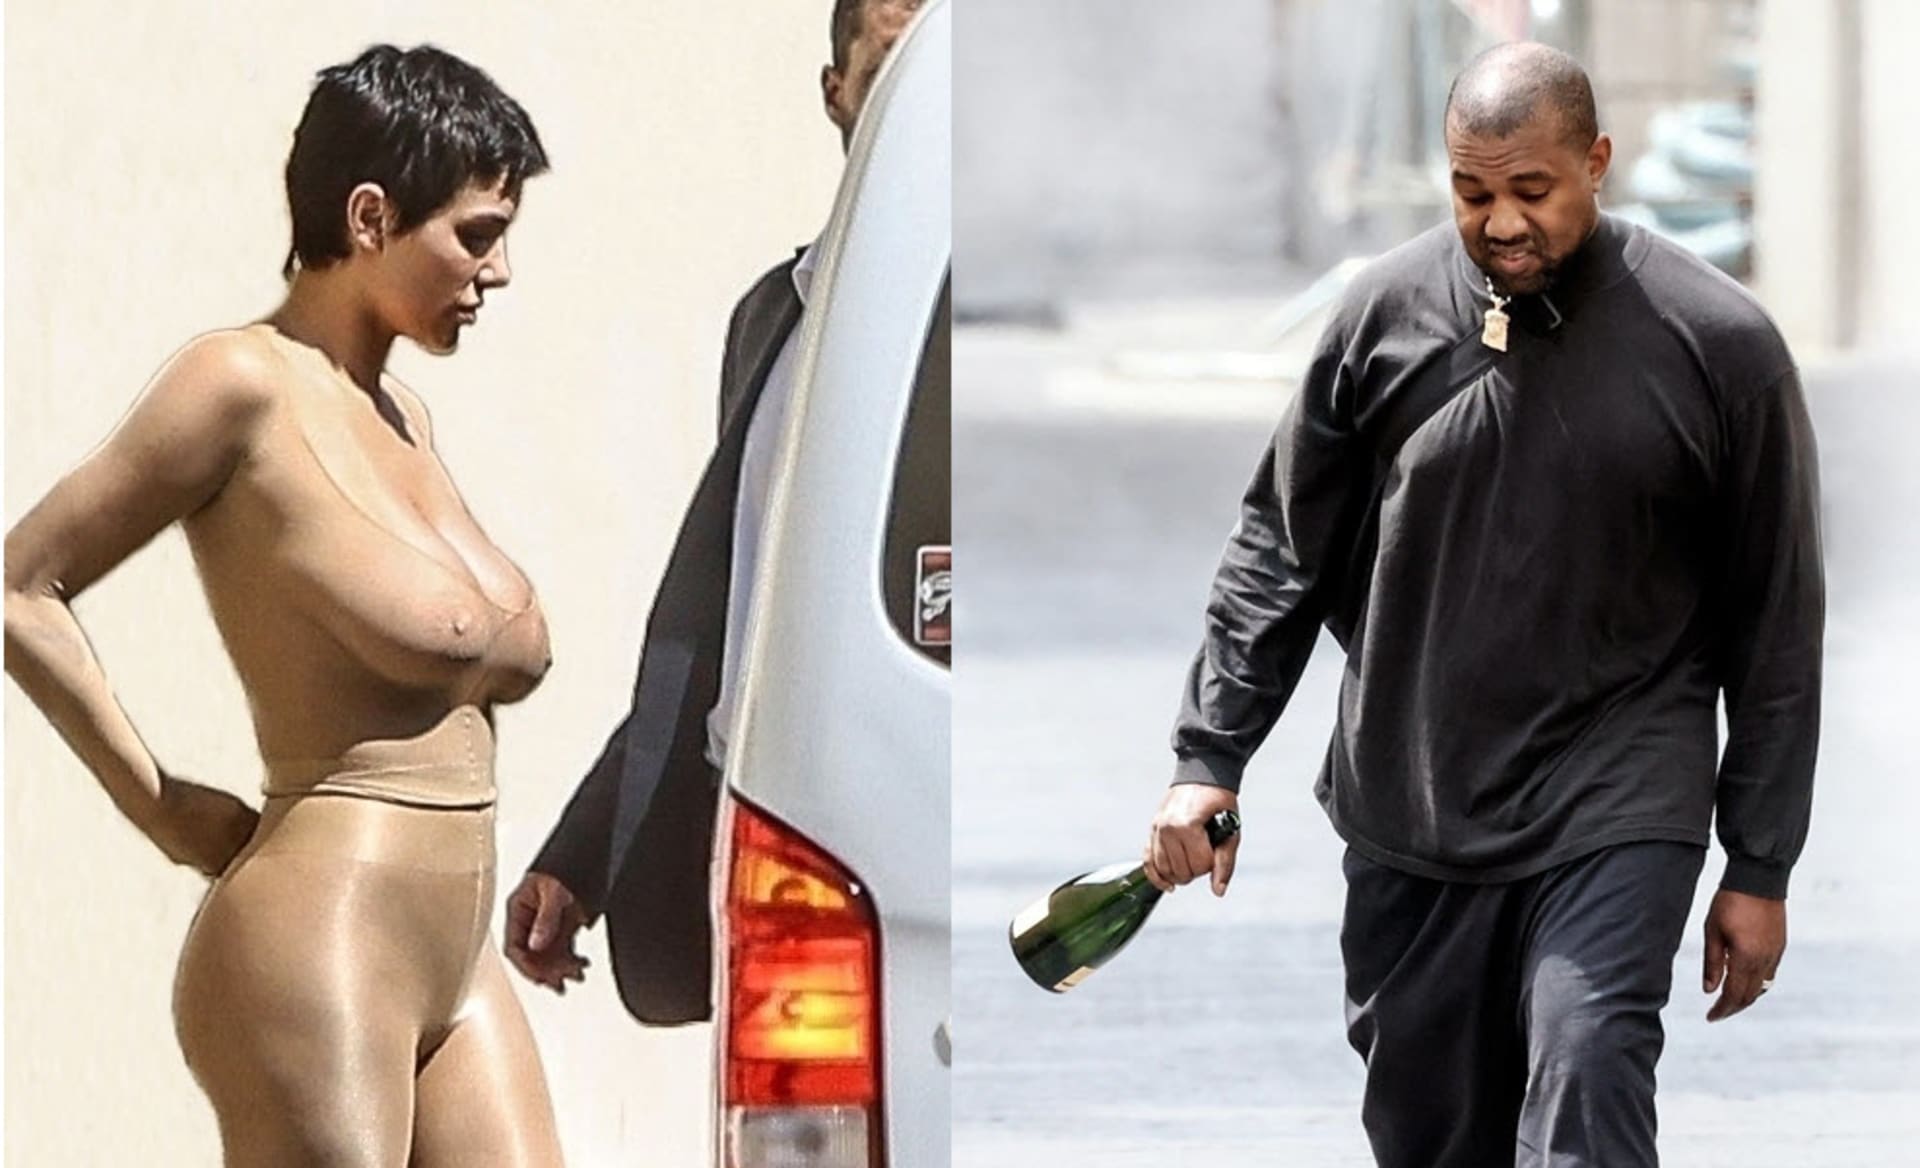 Kanyeho manželka se opět na veřejnosti promenádovala polonahá.